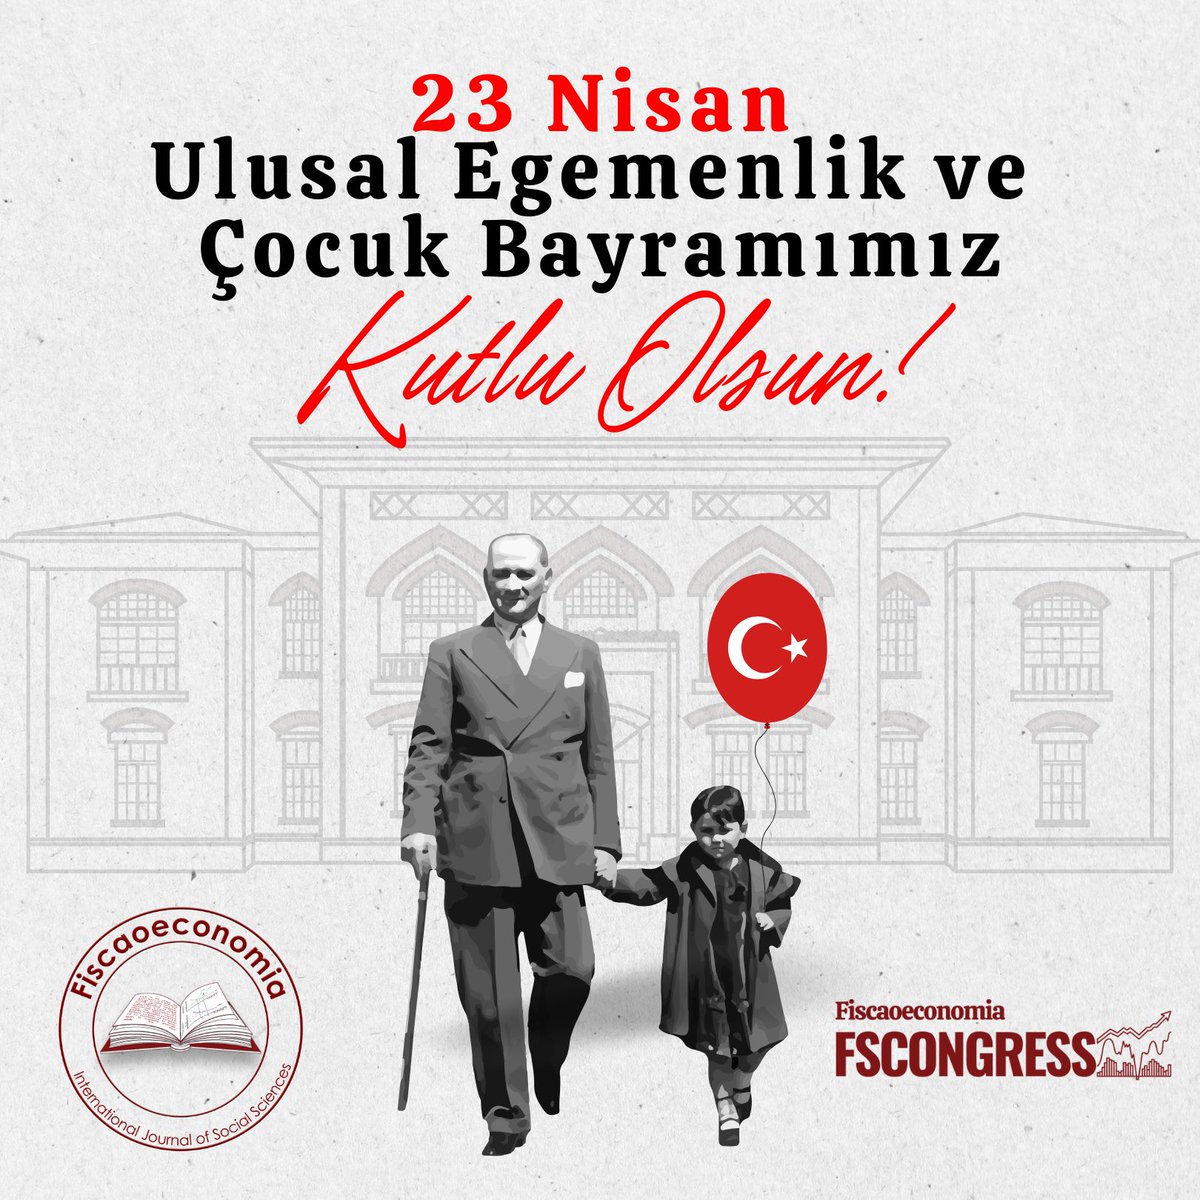 Ulu Önder Gazi Mustafa Kemal Atatürk’e saygı, sevgi ve minnetle. 🇹🇷